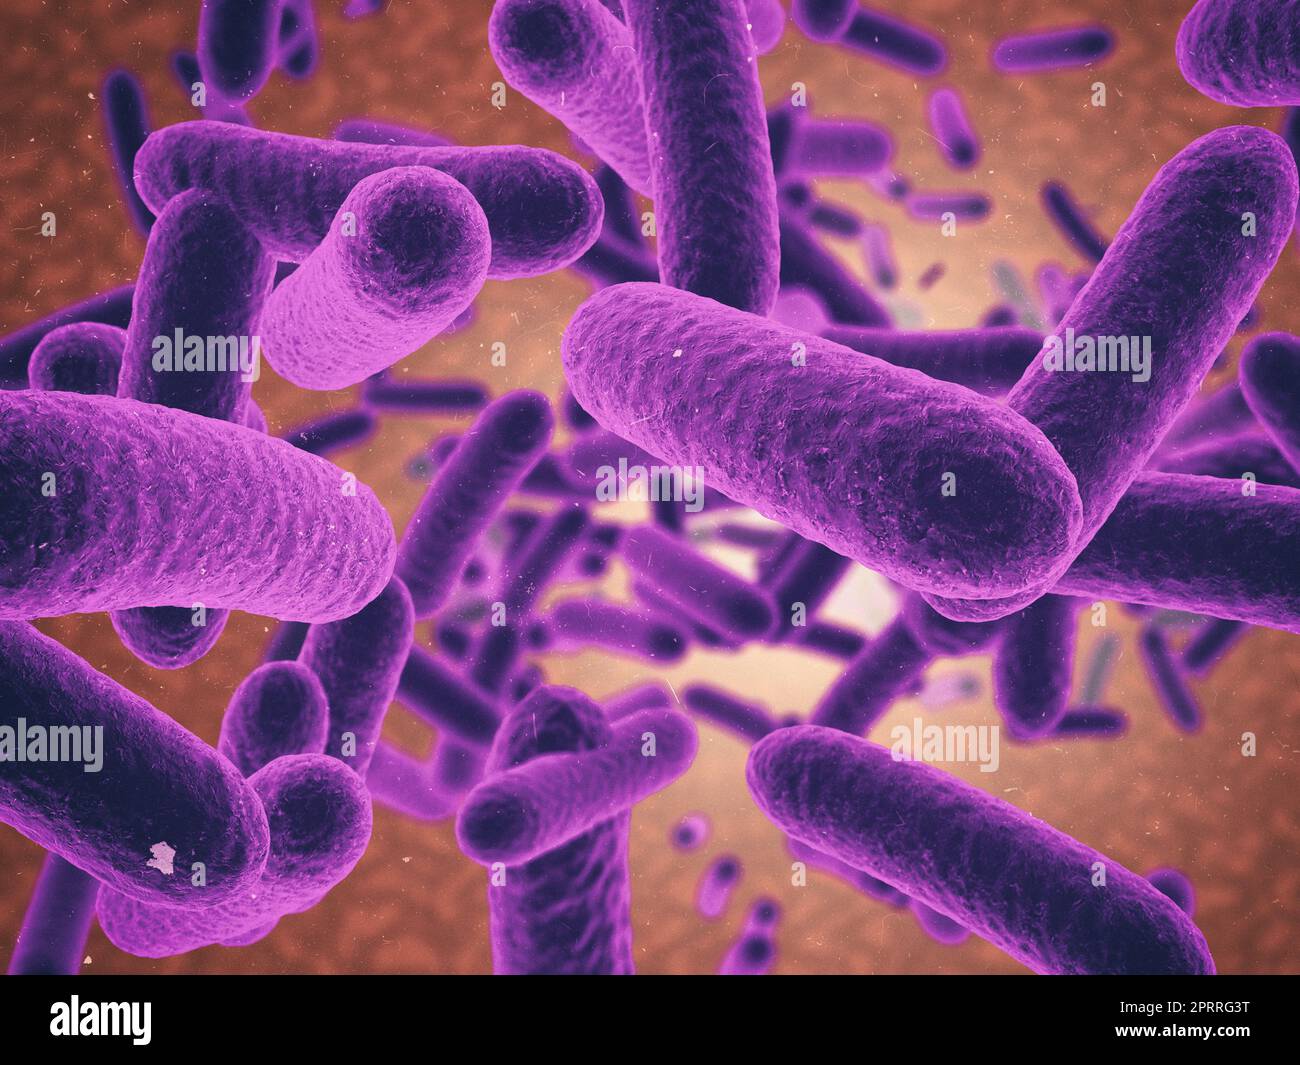 Ihr Immunsystem angreifen. Mikroskopische Ansicht eines Virus in Farbe. Stockfoto